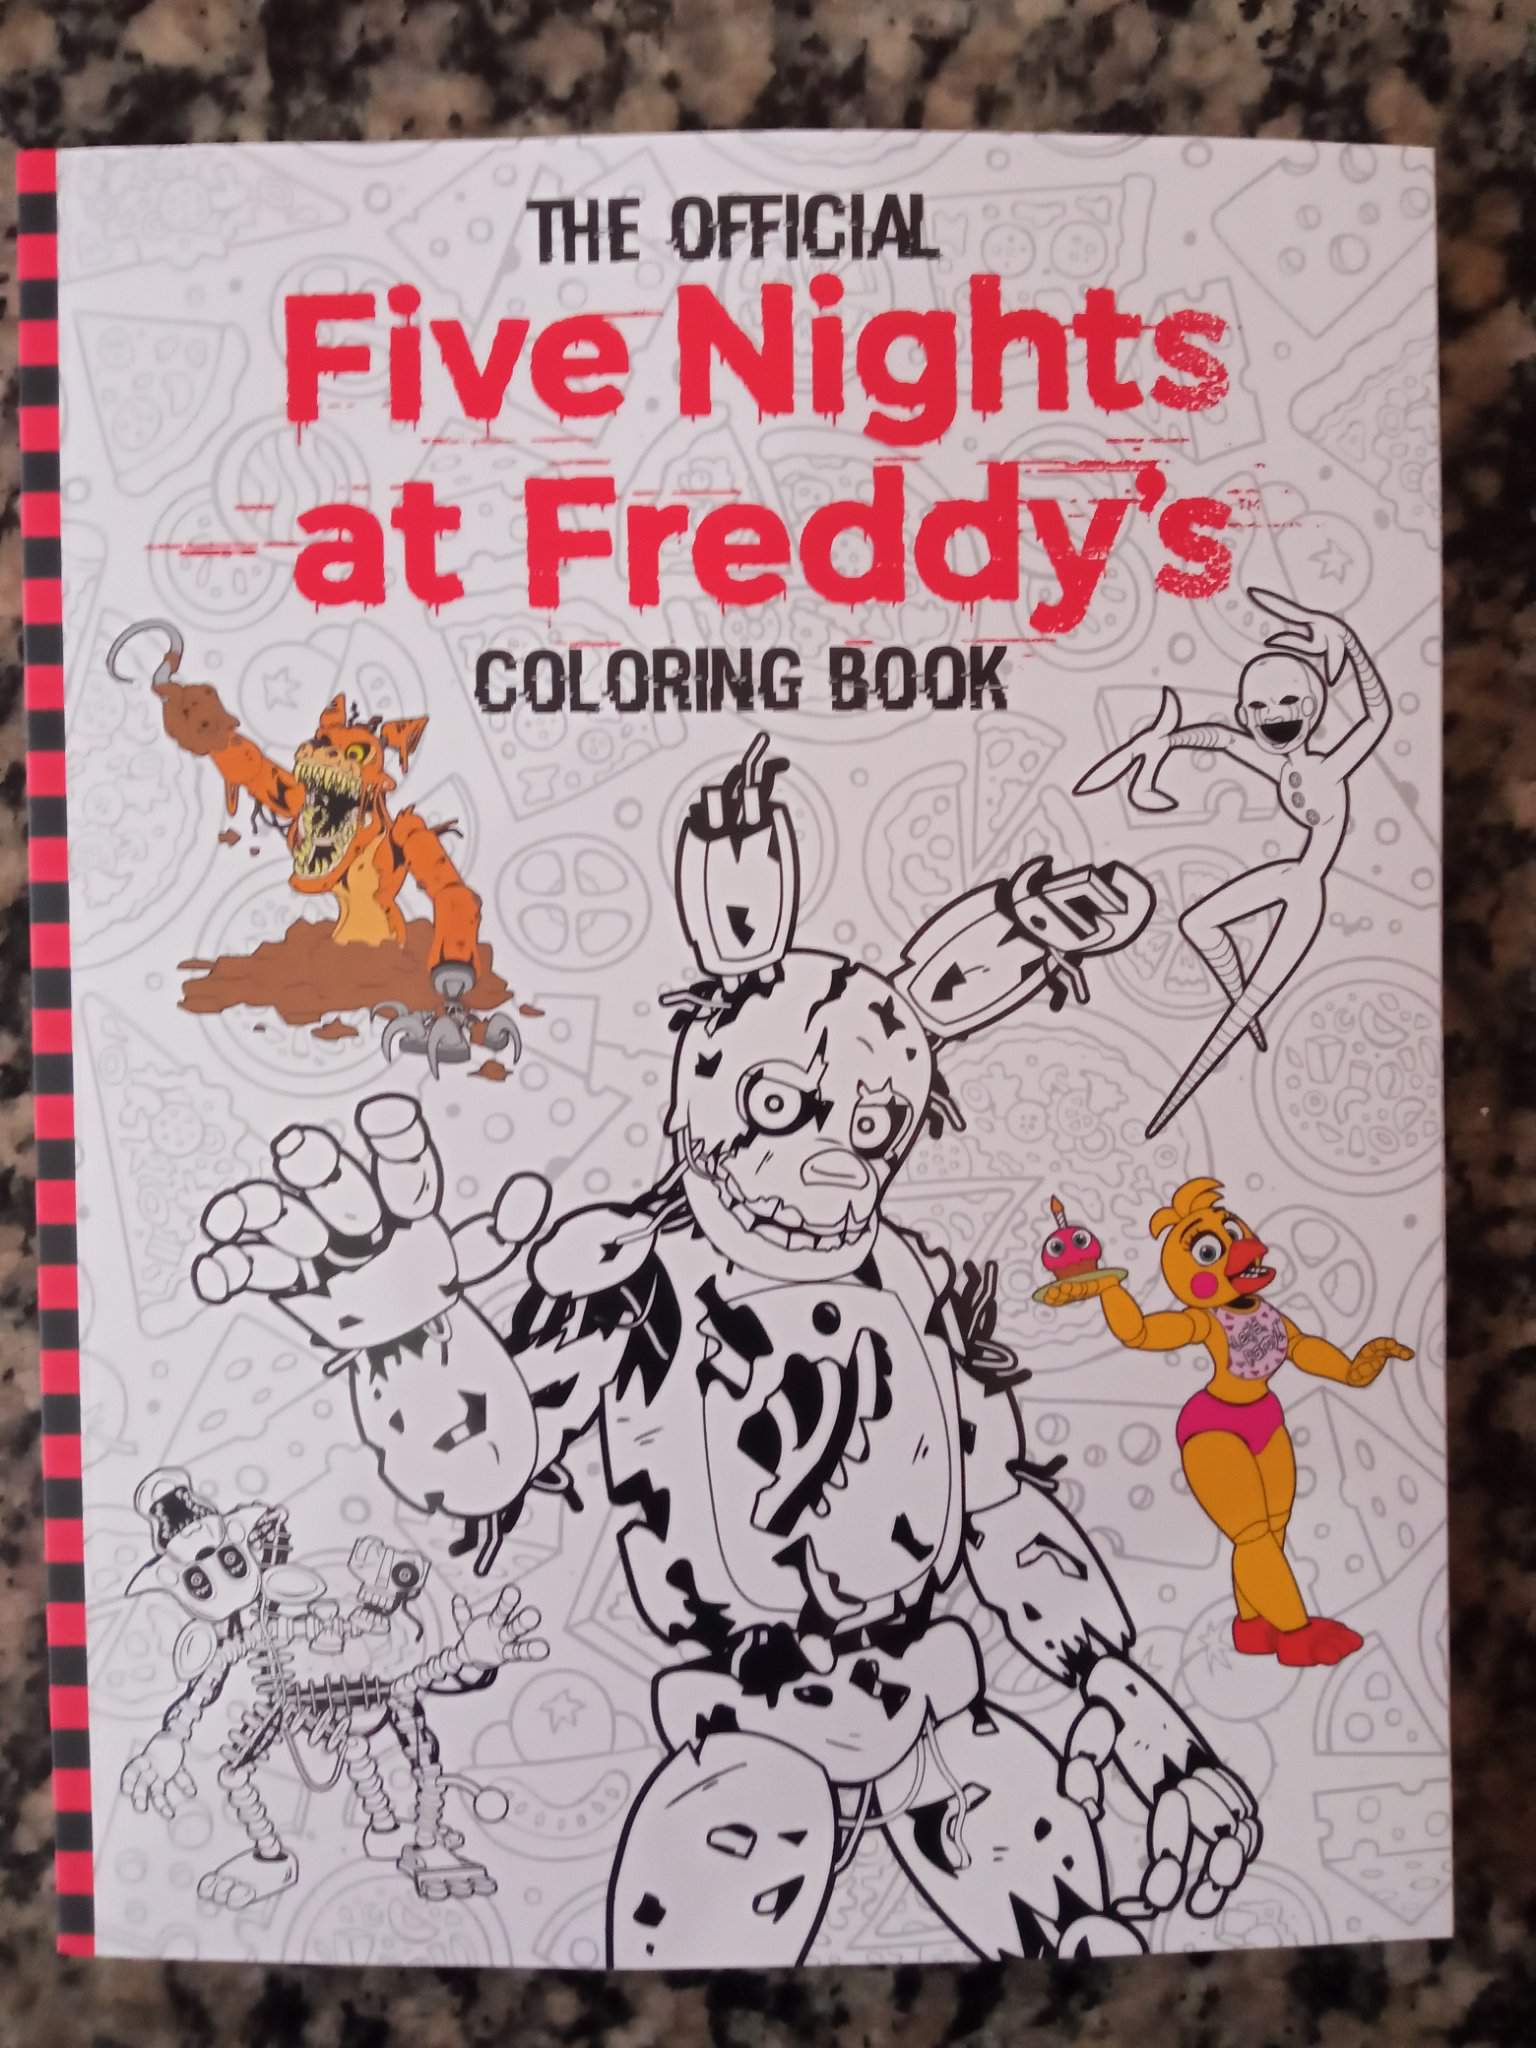 Recebi O Livro De Colorir Oficial De Fnaf Five Nights At Freddys PT